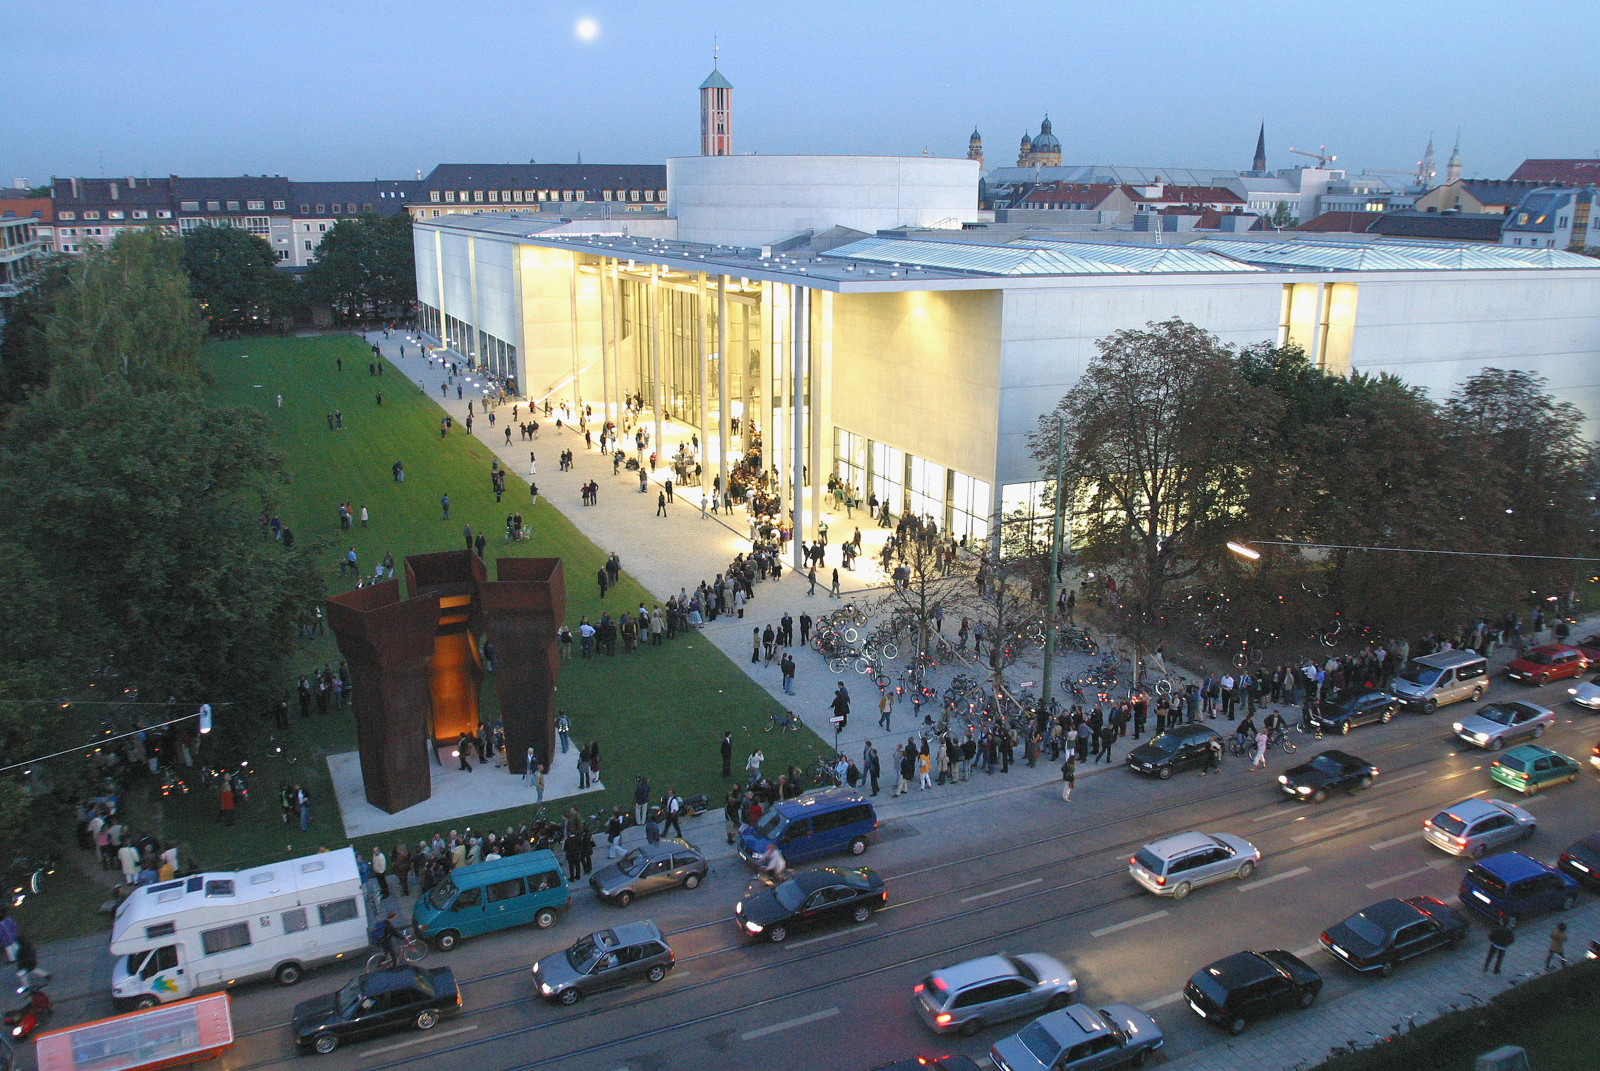 Gut besucht: die Pinakothek der Moderne in der Eröffnungswoche im September 2002 <br>(Foto: Haydar Koyupinar, Bayerische Staatsgemäldesammlungen)